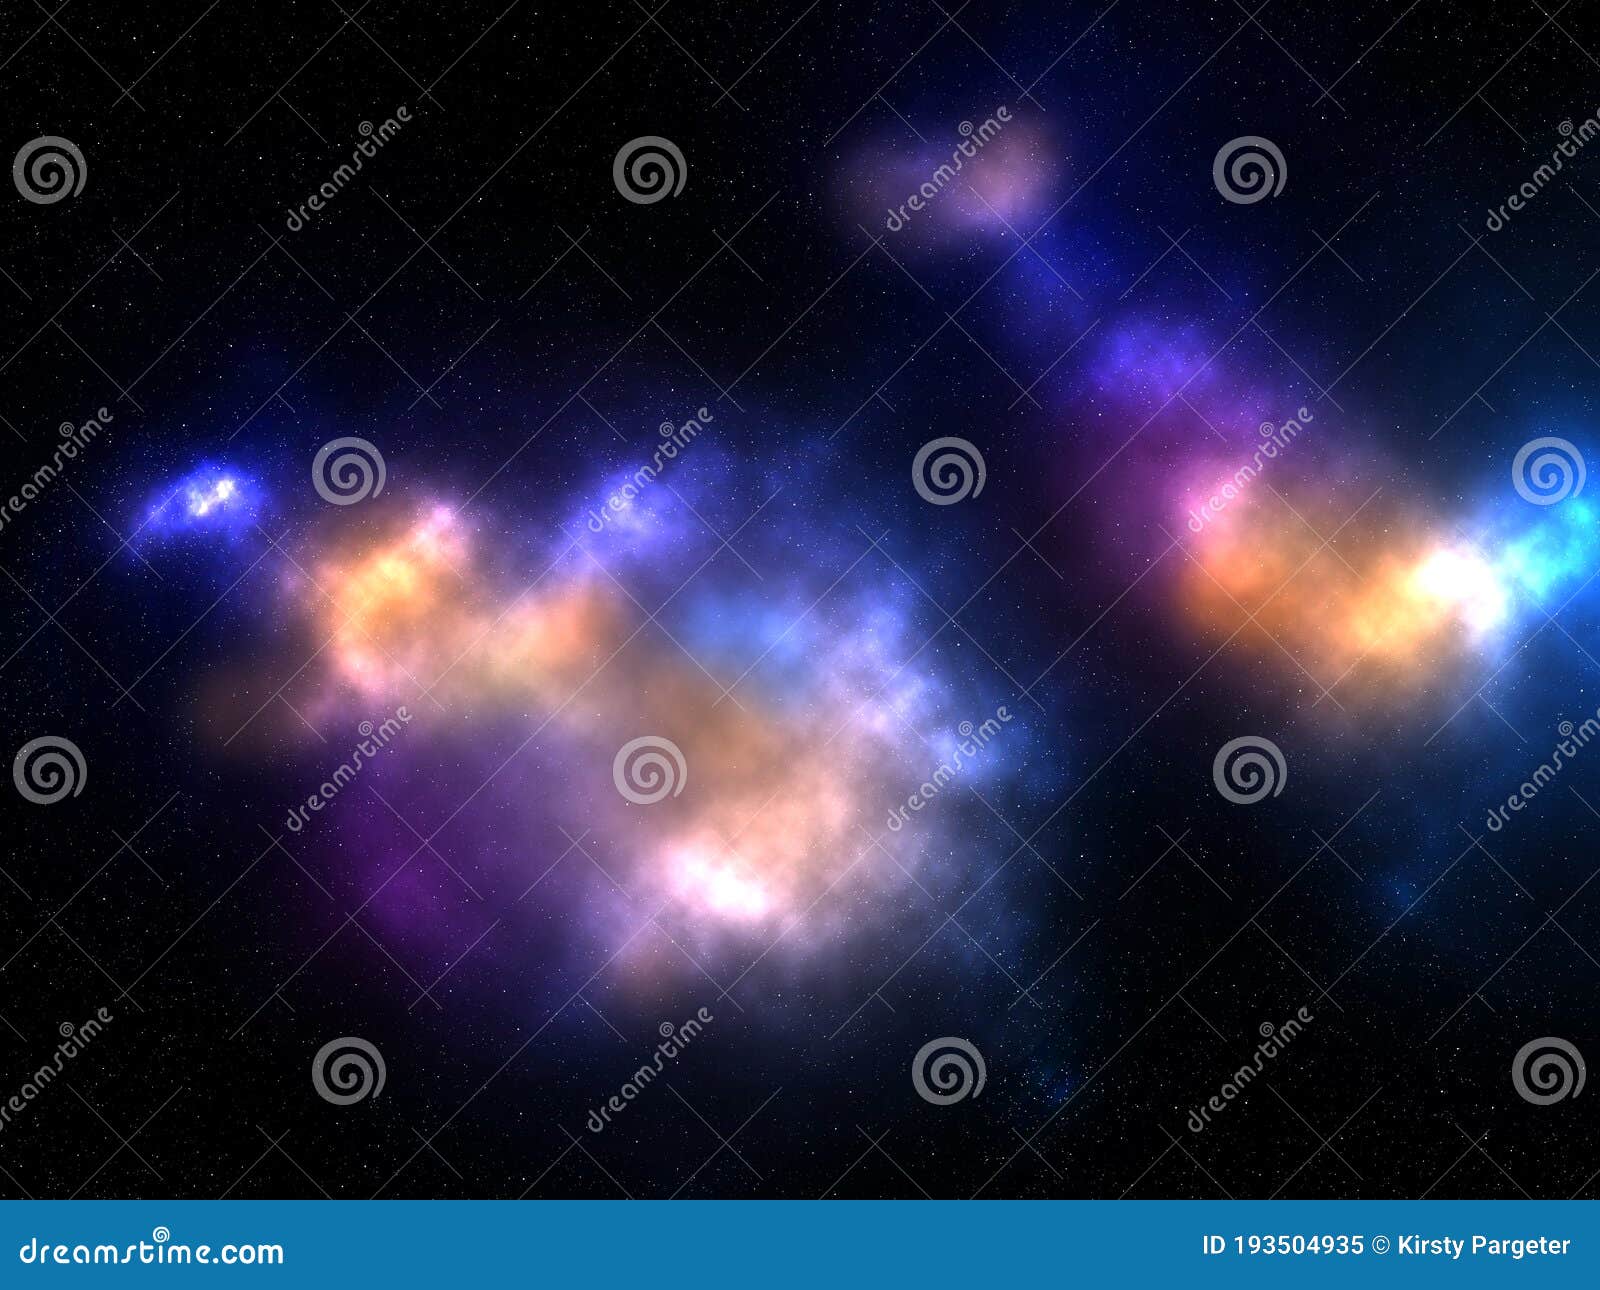 3D Abstract Space Sky: Với bức ảnh 3D Abstract Space Sky này, bạn sẽ có cơ hội được trải nghiệm một hành trình thám hiểm vào vũ trụ đầy màu sắc và bí ẩn. Không chỉ đẹp mắt, bức ảnh này còn chứa đựng nhiều thông tin khoa học thú vị và lý thú đang chờ đợi bạn khám phá.